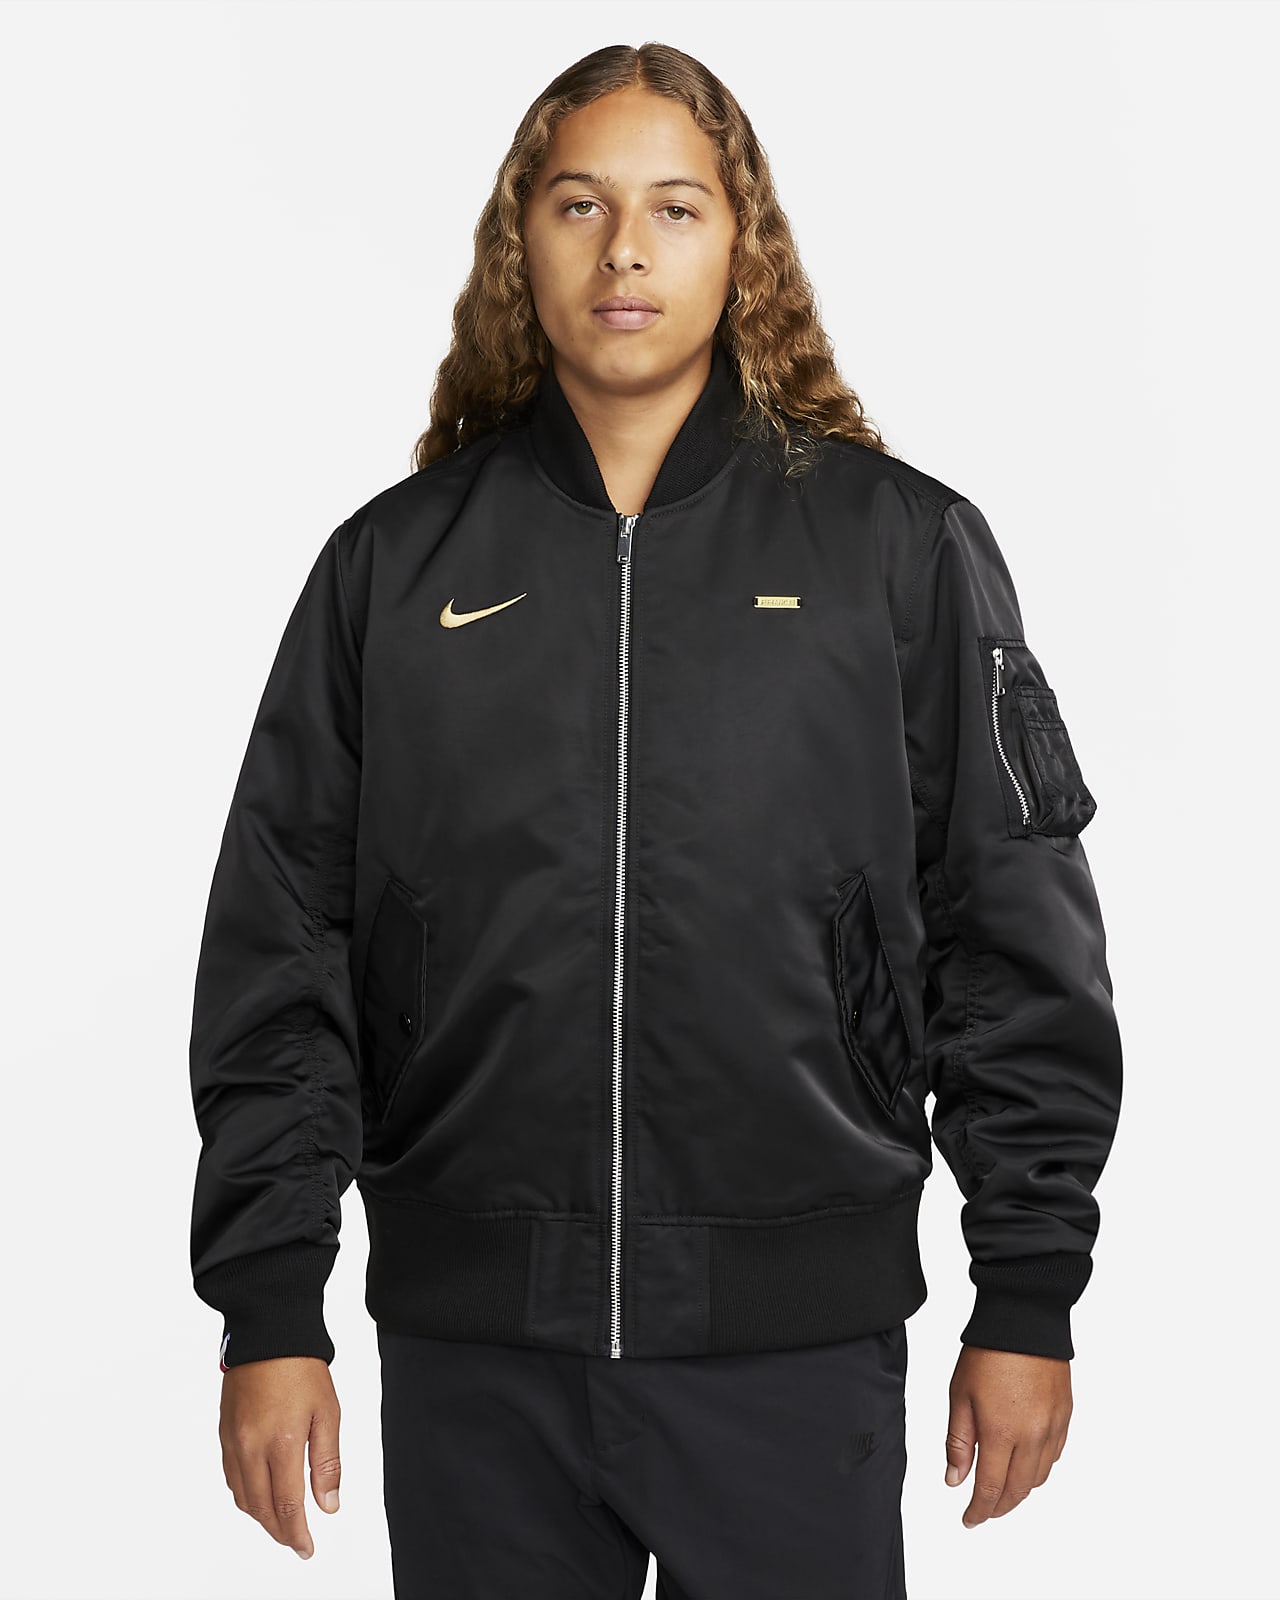 Nike Sportswear Men's Bomber Jacket. Nike LU